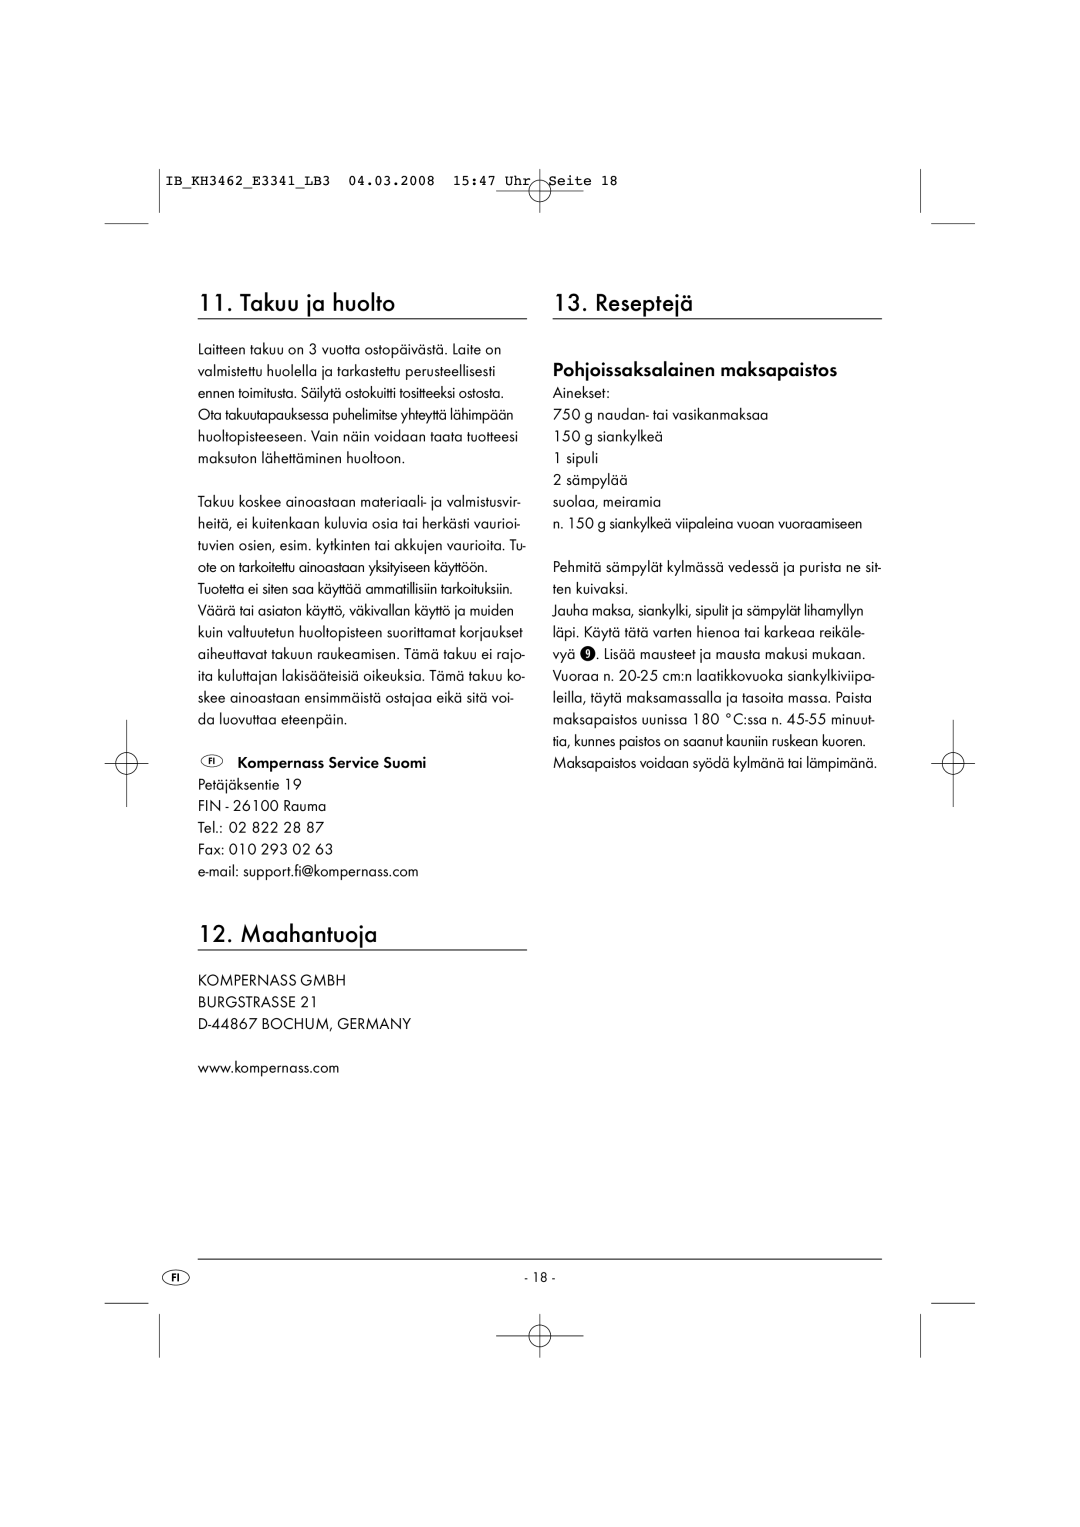 Kompernass KH3462-02/08-V1 manual Takuu ja huolto Reseptejä, Maahantuoja, Pohjoissaksalainen maksapaistos 